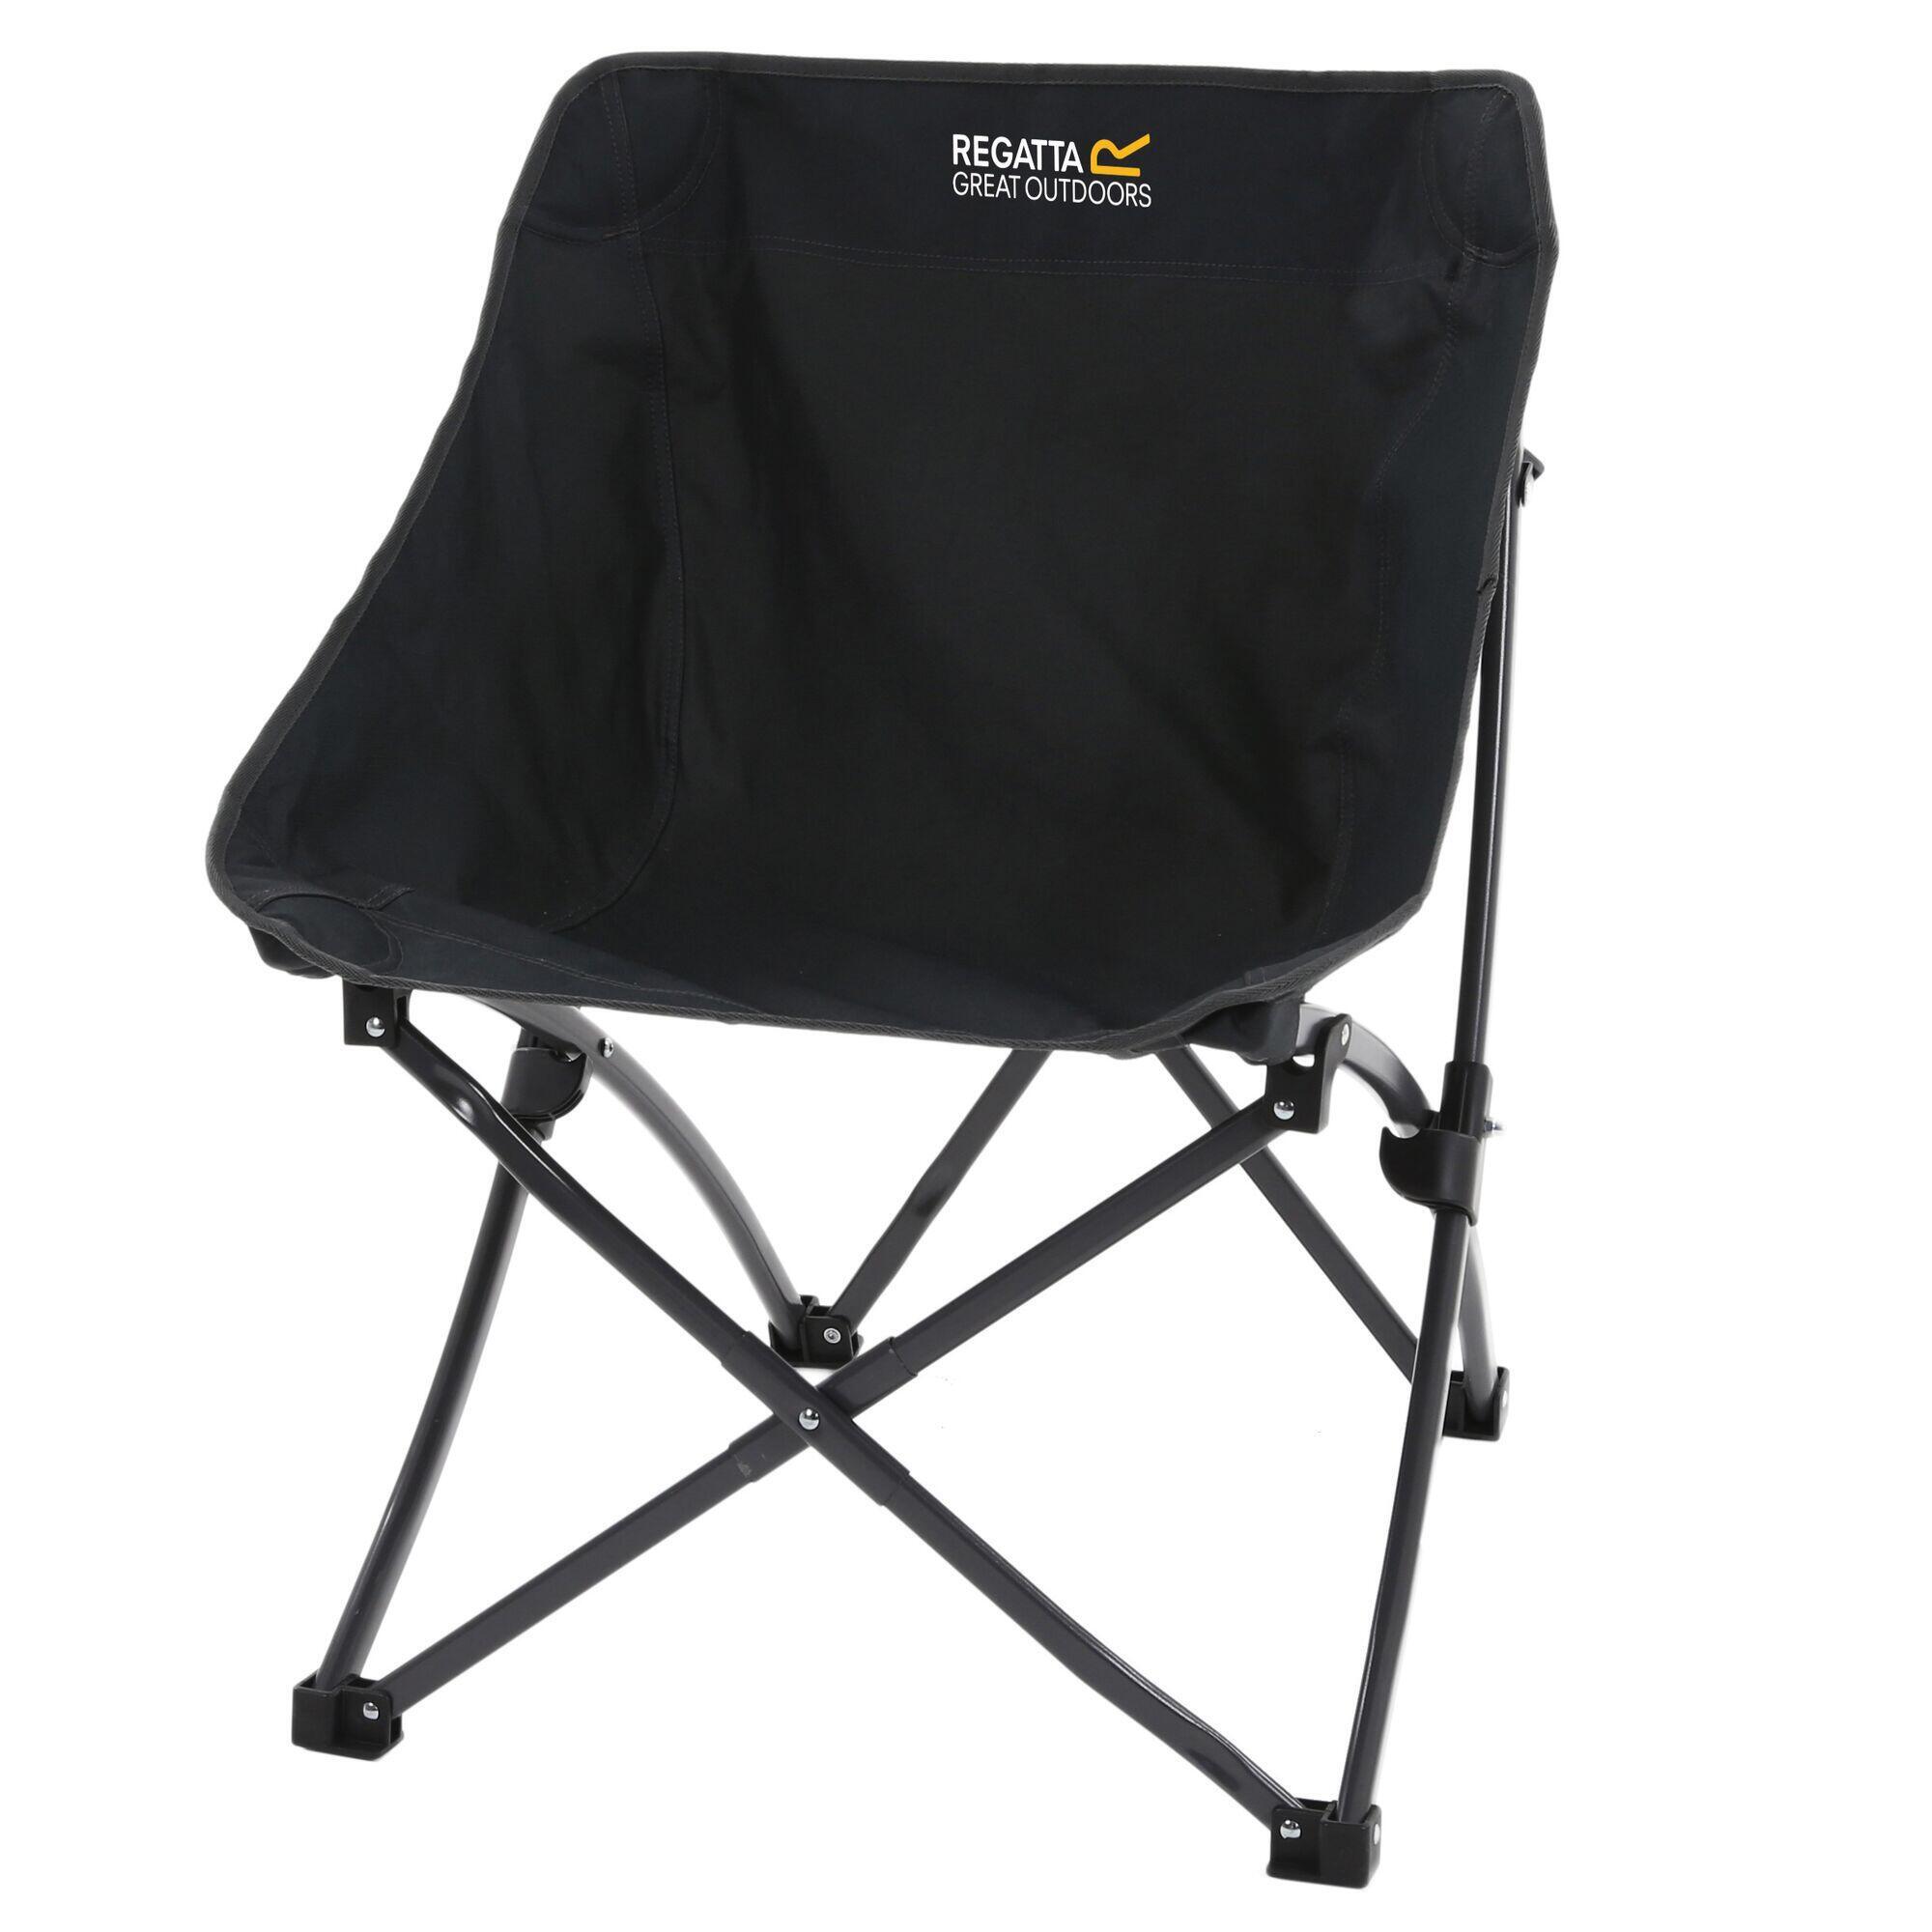 Стул складной Regatta Forza Pro Adult для кемпинга, черный складной стул для кемпинга складной стул сверхлегкий стул для кемпинга большой стул для кемпинга складной стул для кемпинга foldi